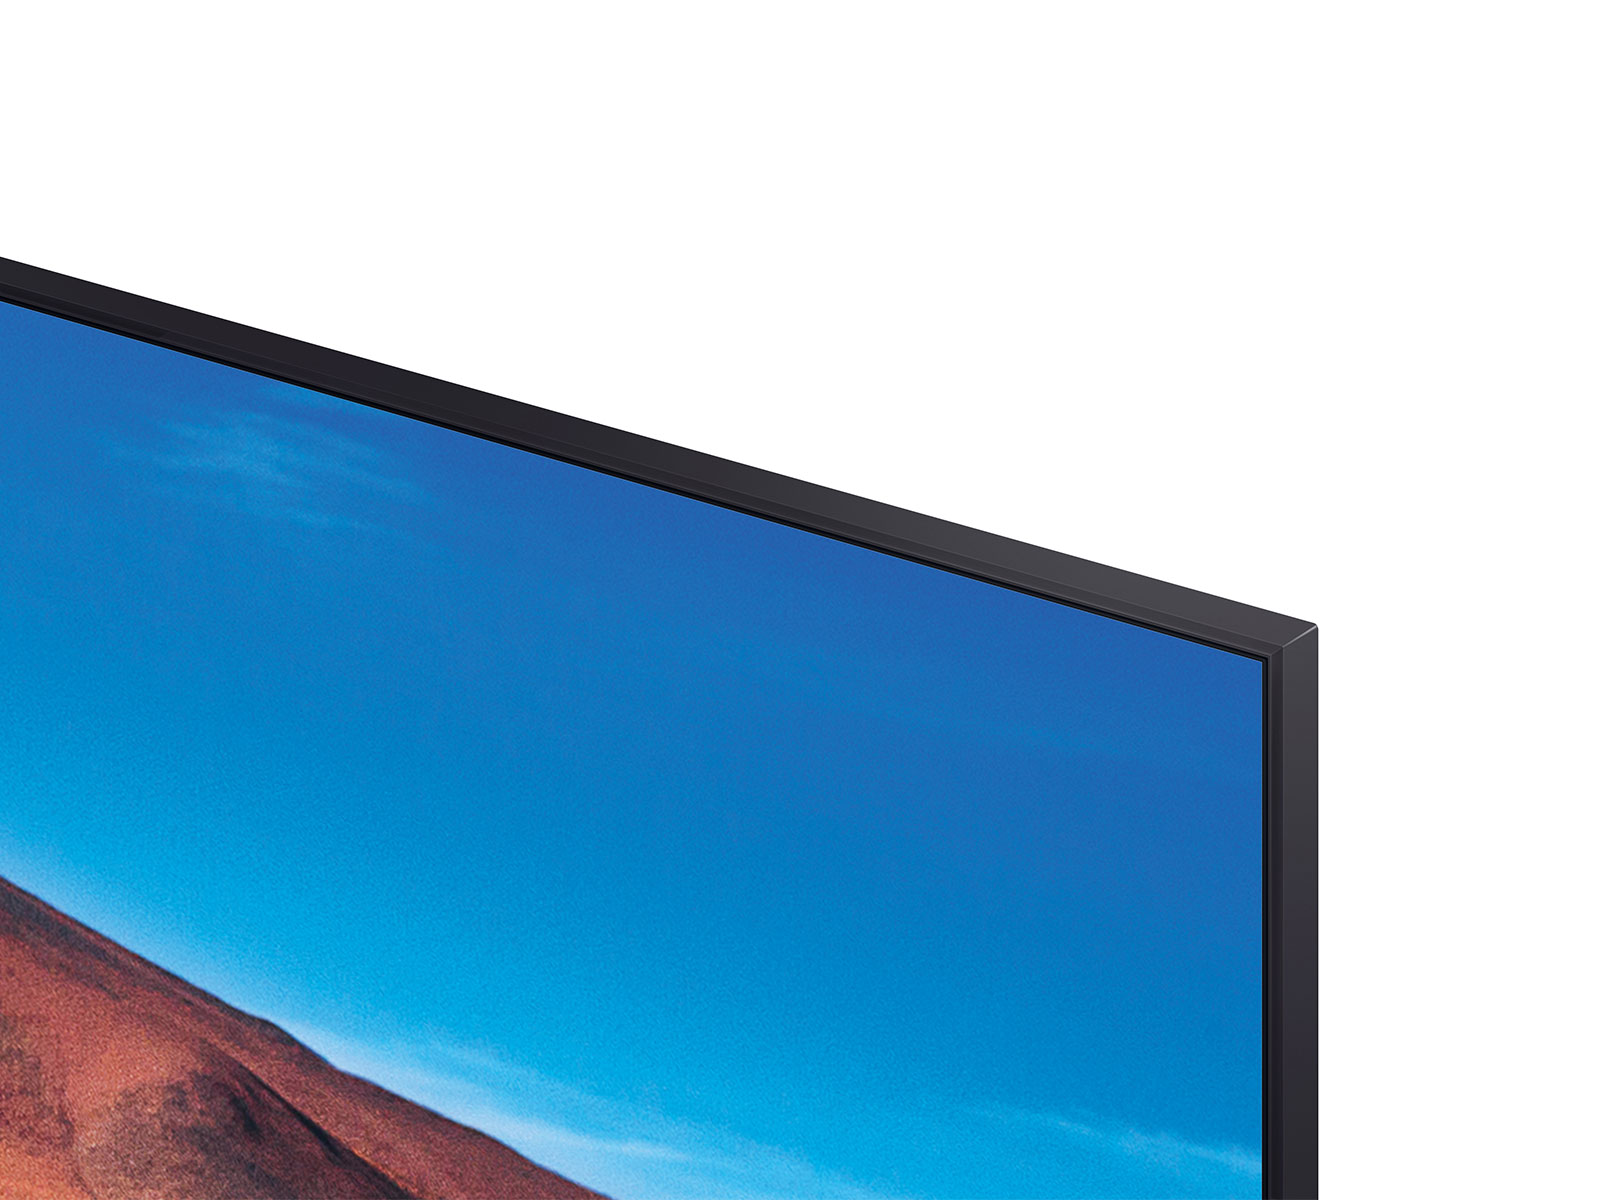  SAMSUNG - Smart TV de 85 pulgadas 4K UHD TU7000